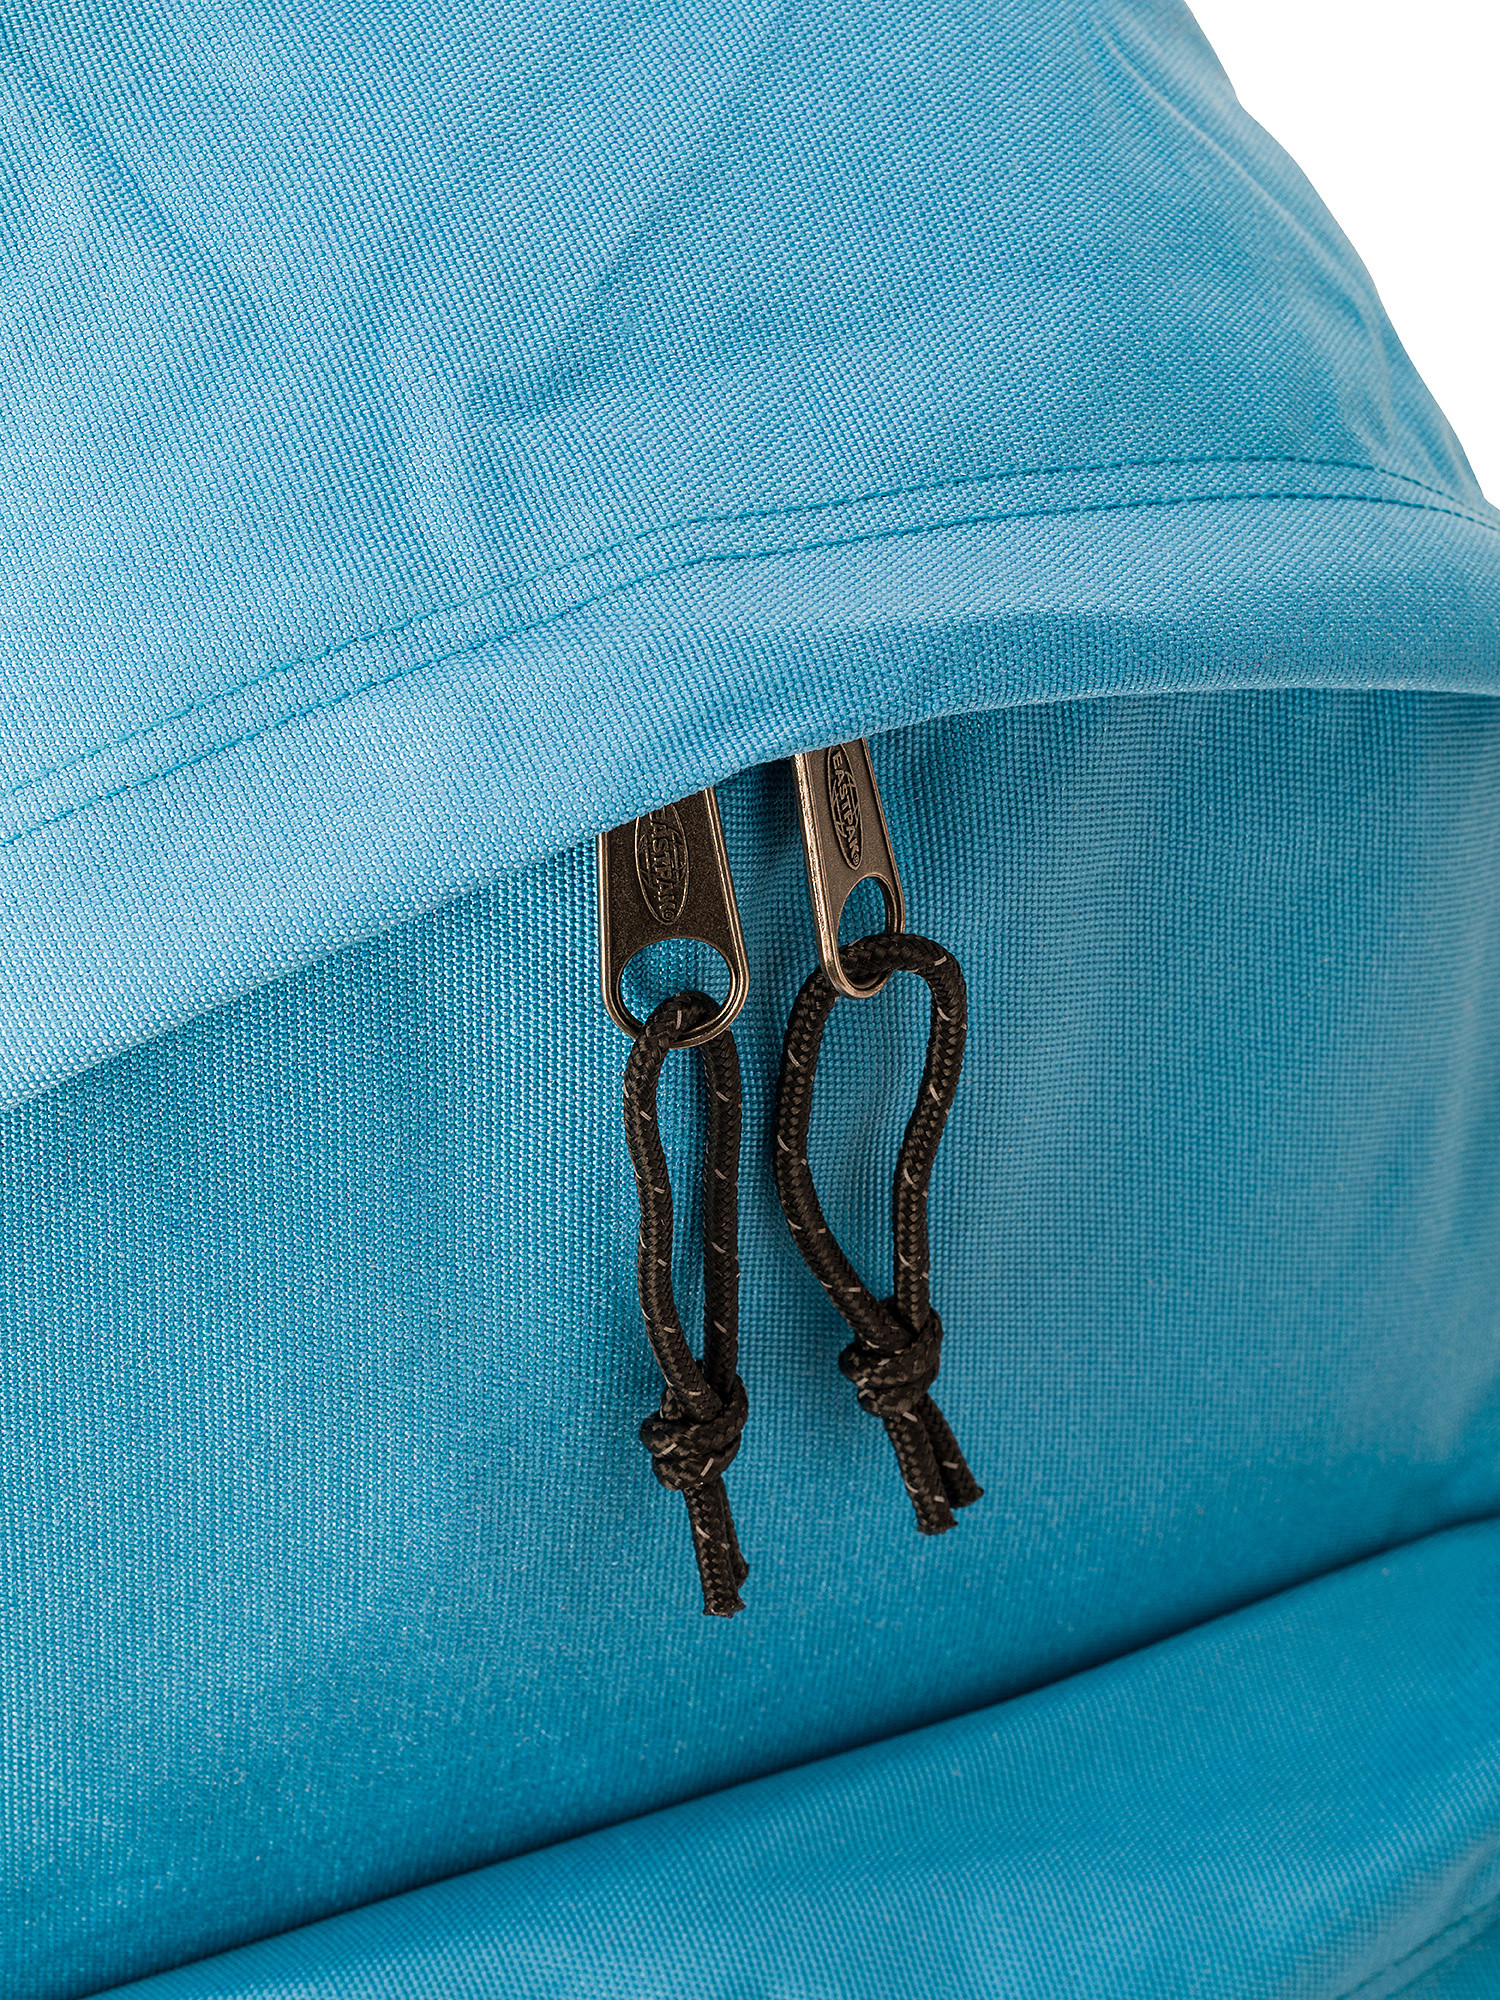 Eastpak - Padded Pak'r Broad Blue backpack, Blue Dark, large image number 2